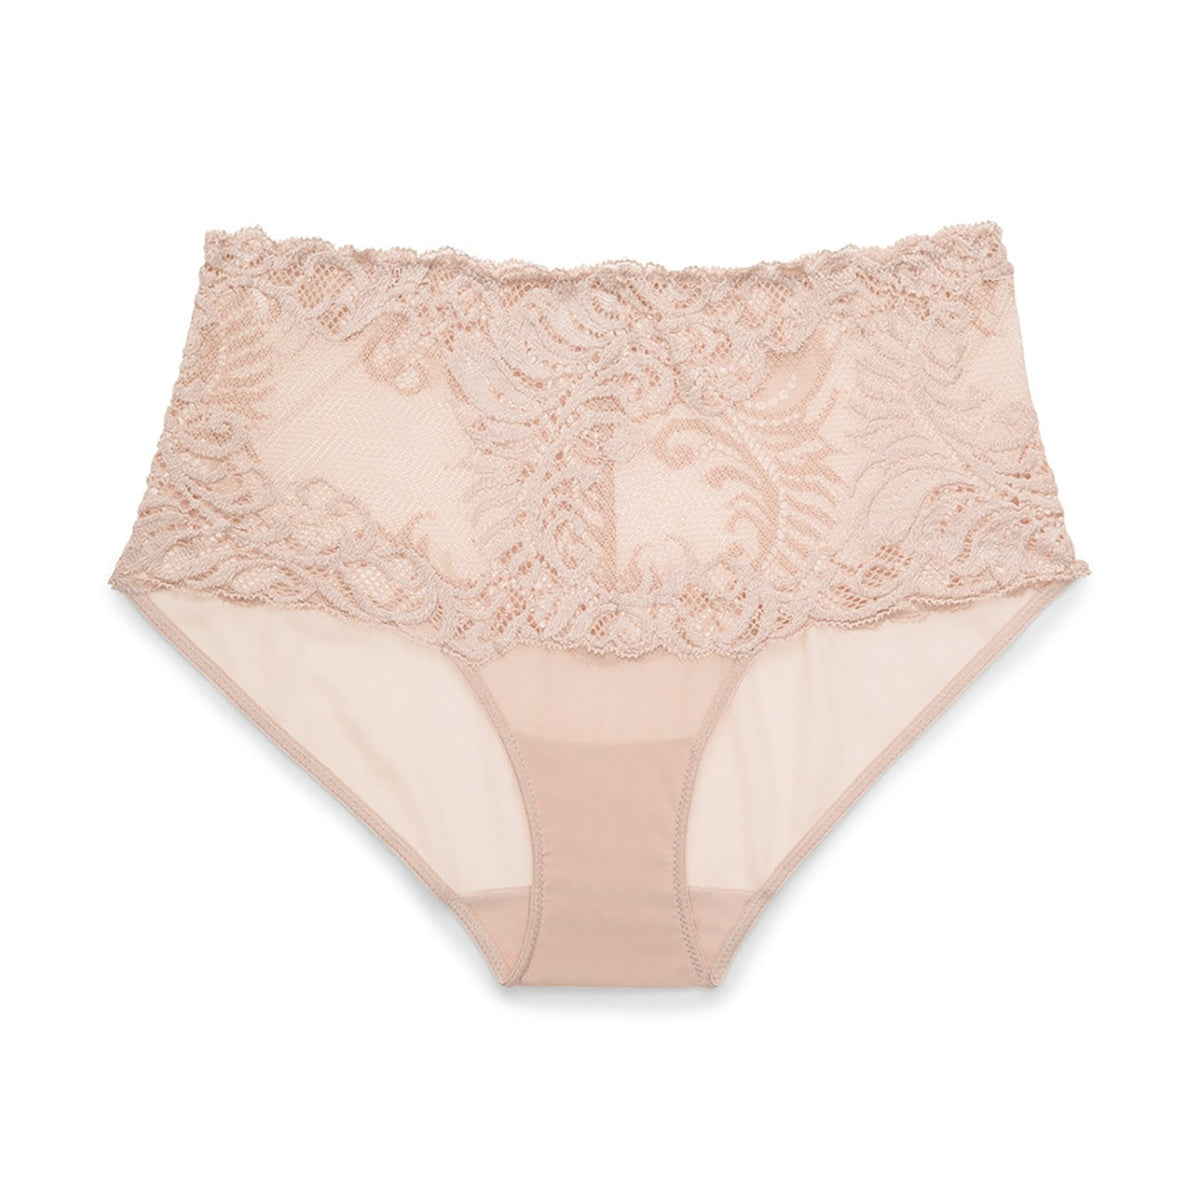 Natori Pink Lingerie : Pajamas, Bras, & Panties